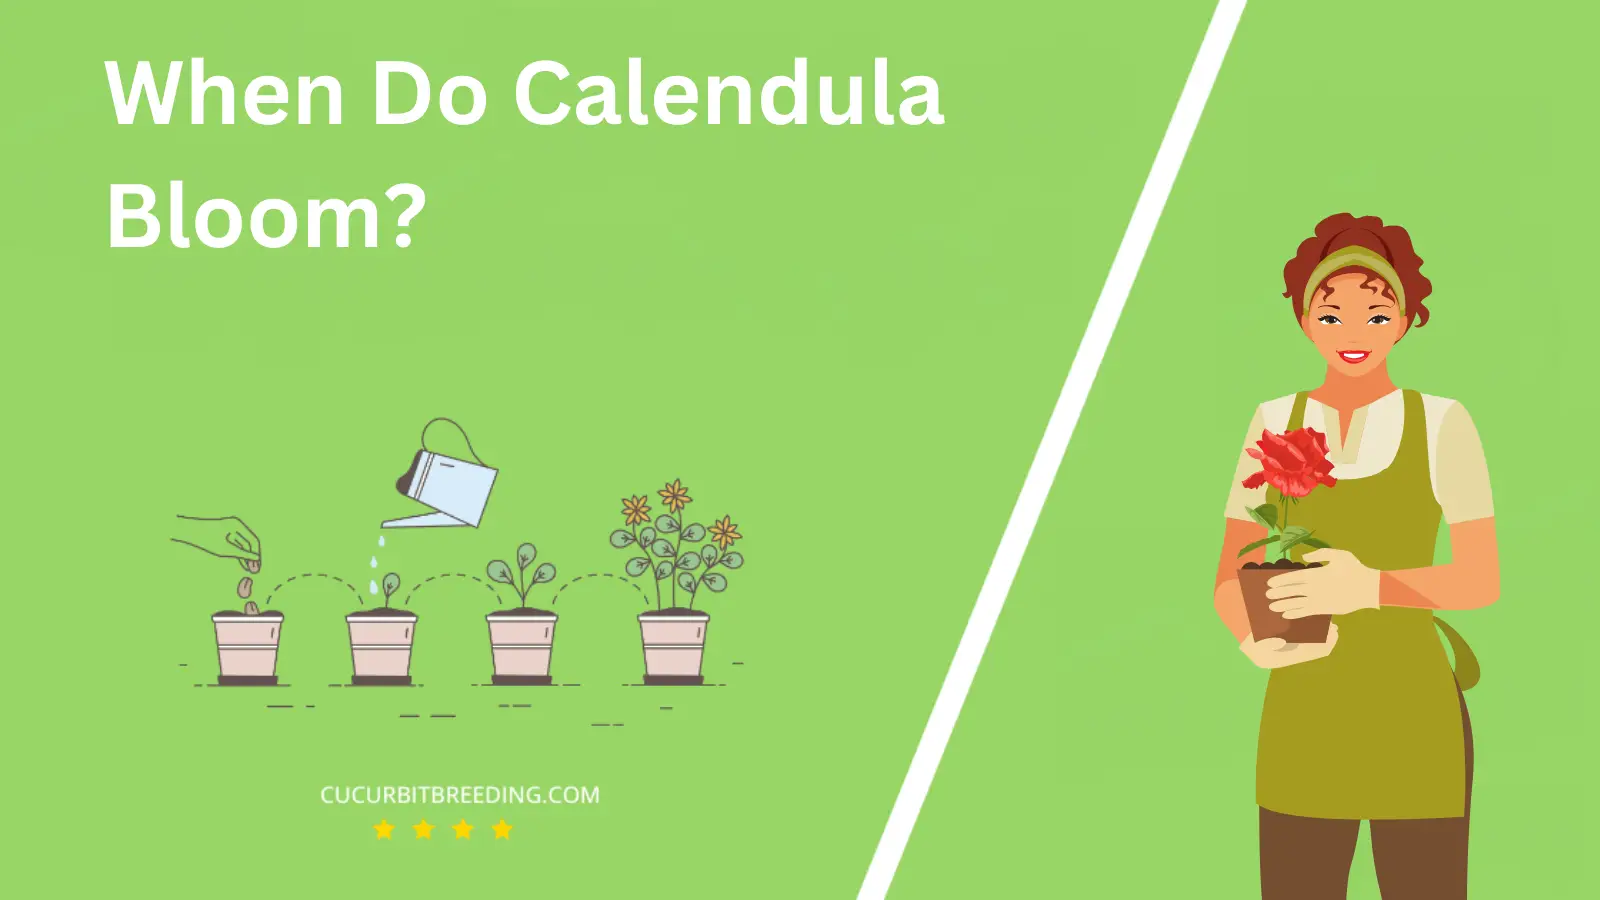 When Do Calendula Bloom?